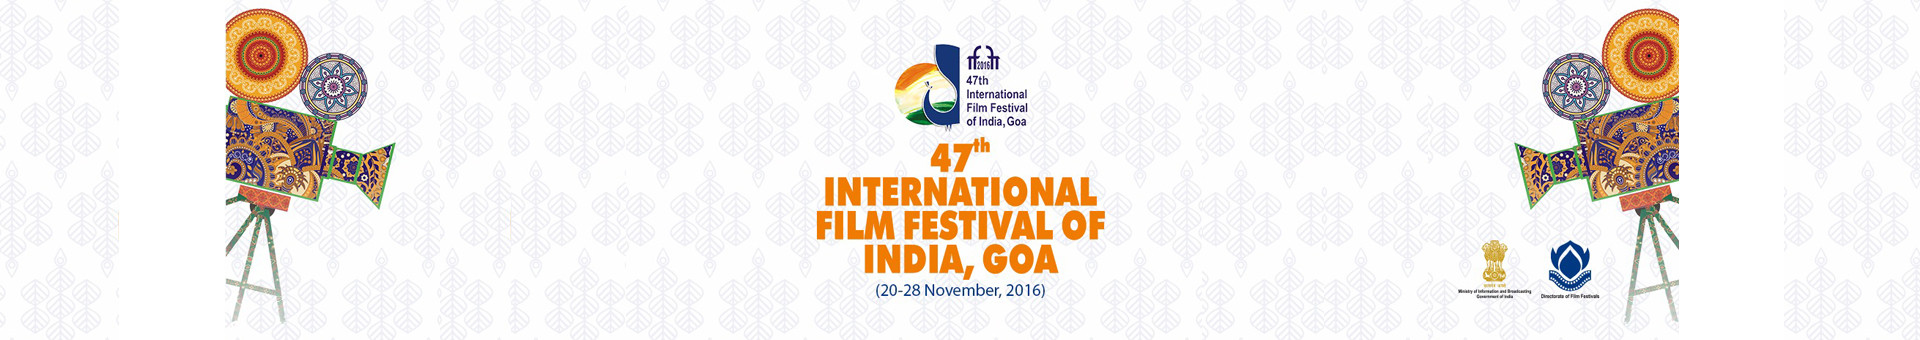 印度国际电影节